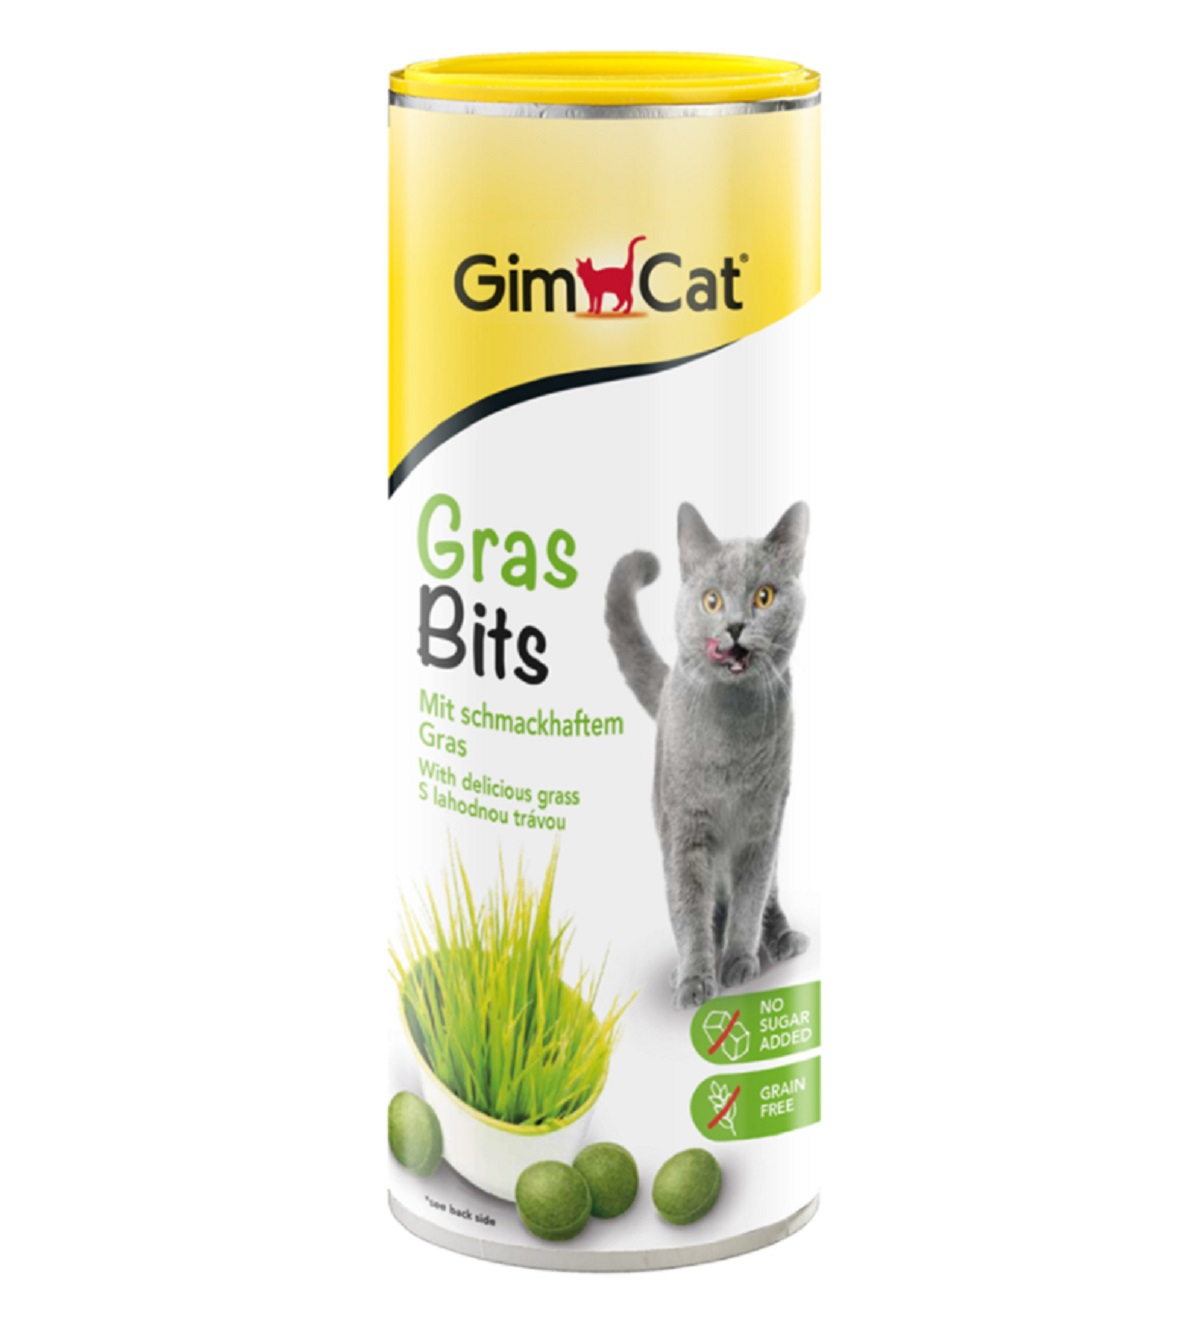 GIMCAT GrasBits Snacks au goût d'herbes pour chat